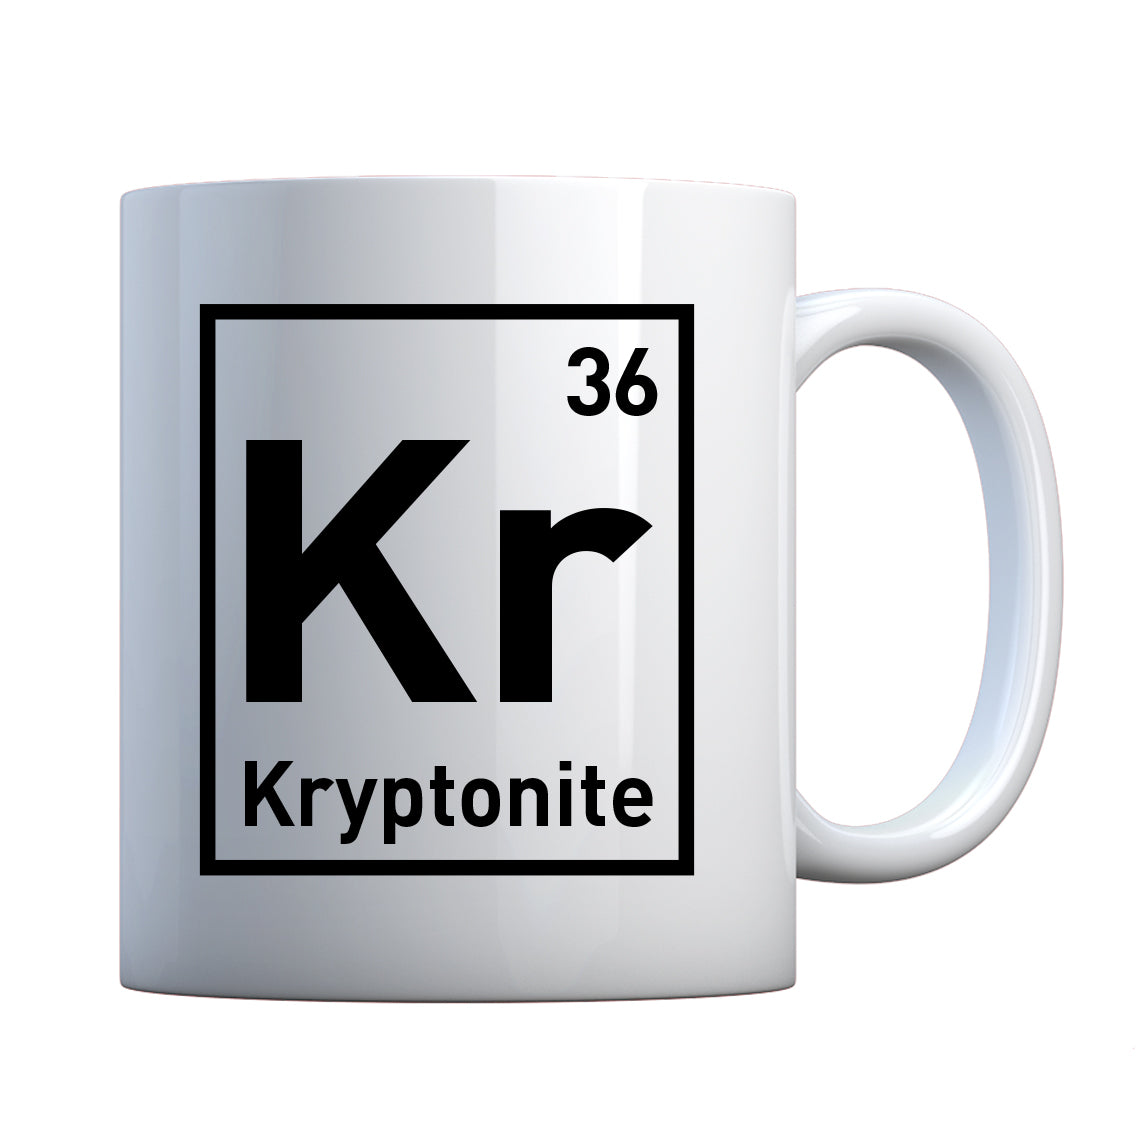 Mug Kryptonite Ceramic Gift Mug